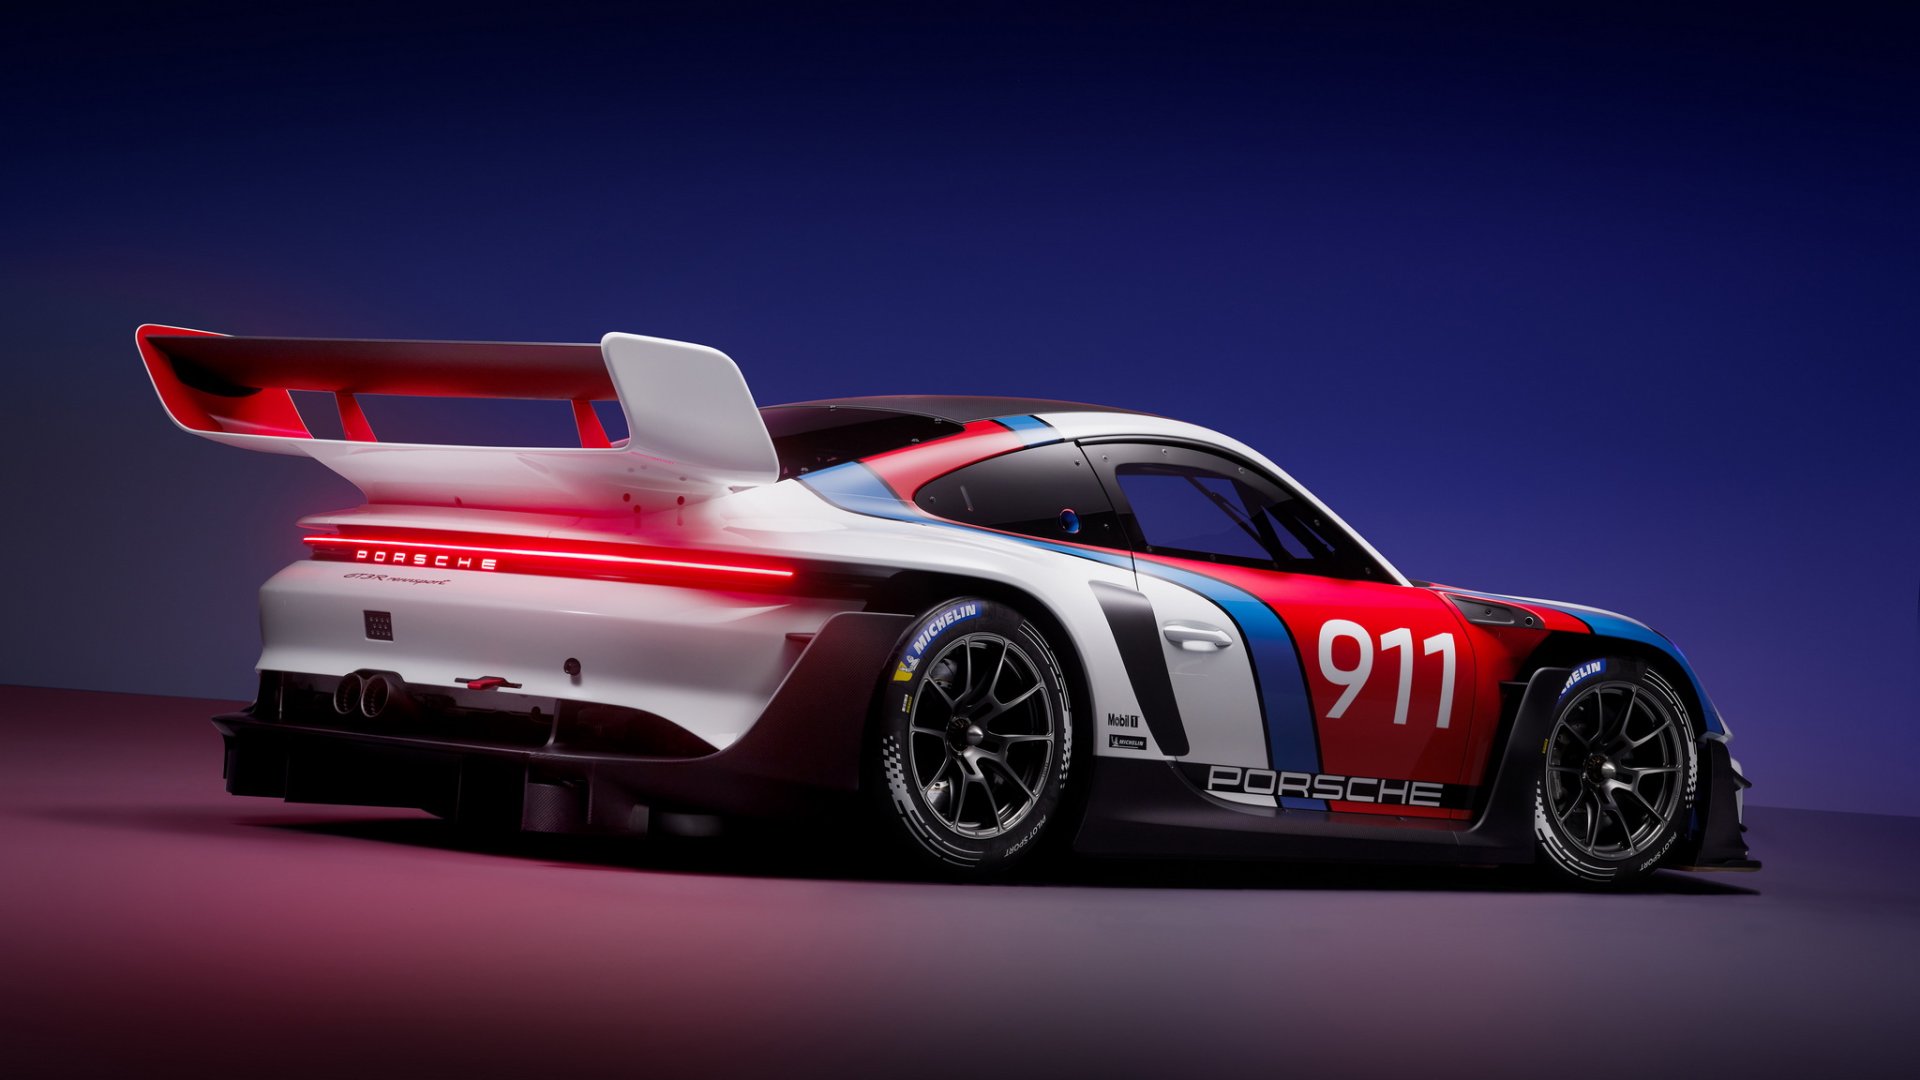 เผยโฉม!! Porsche 911 GT3 R rennsport รถแข่งรุ่นพิเศษ ผลิตจำกัด 77 คัน 